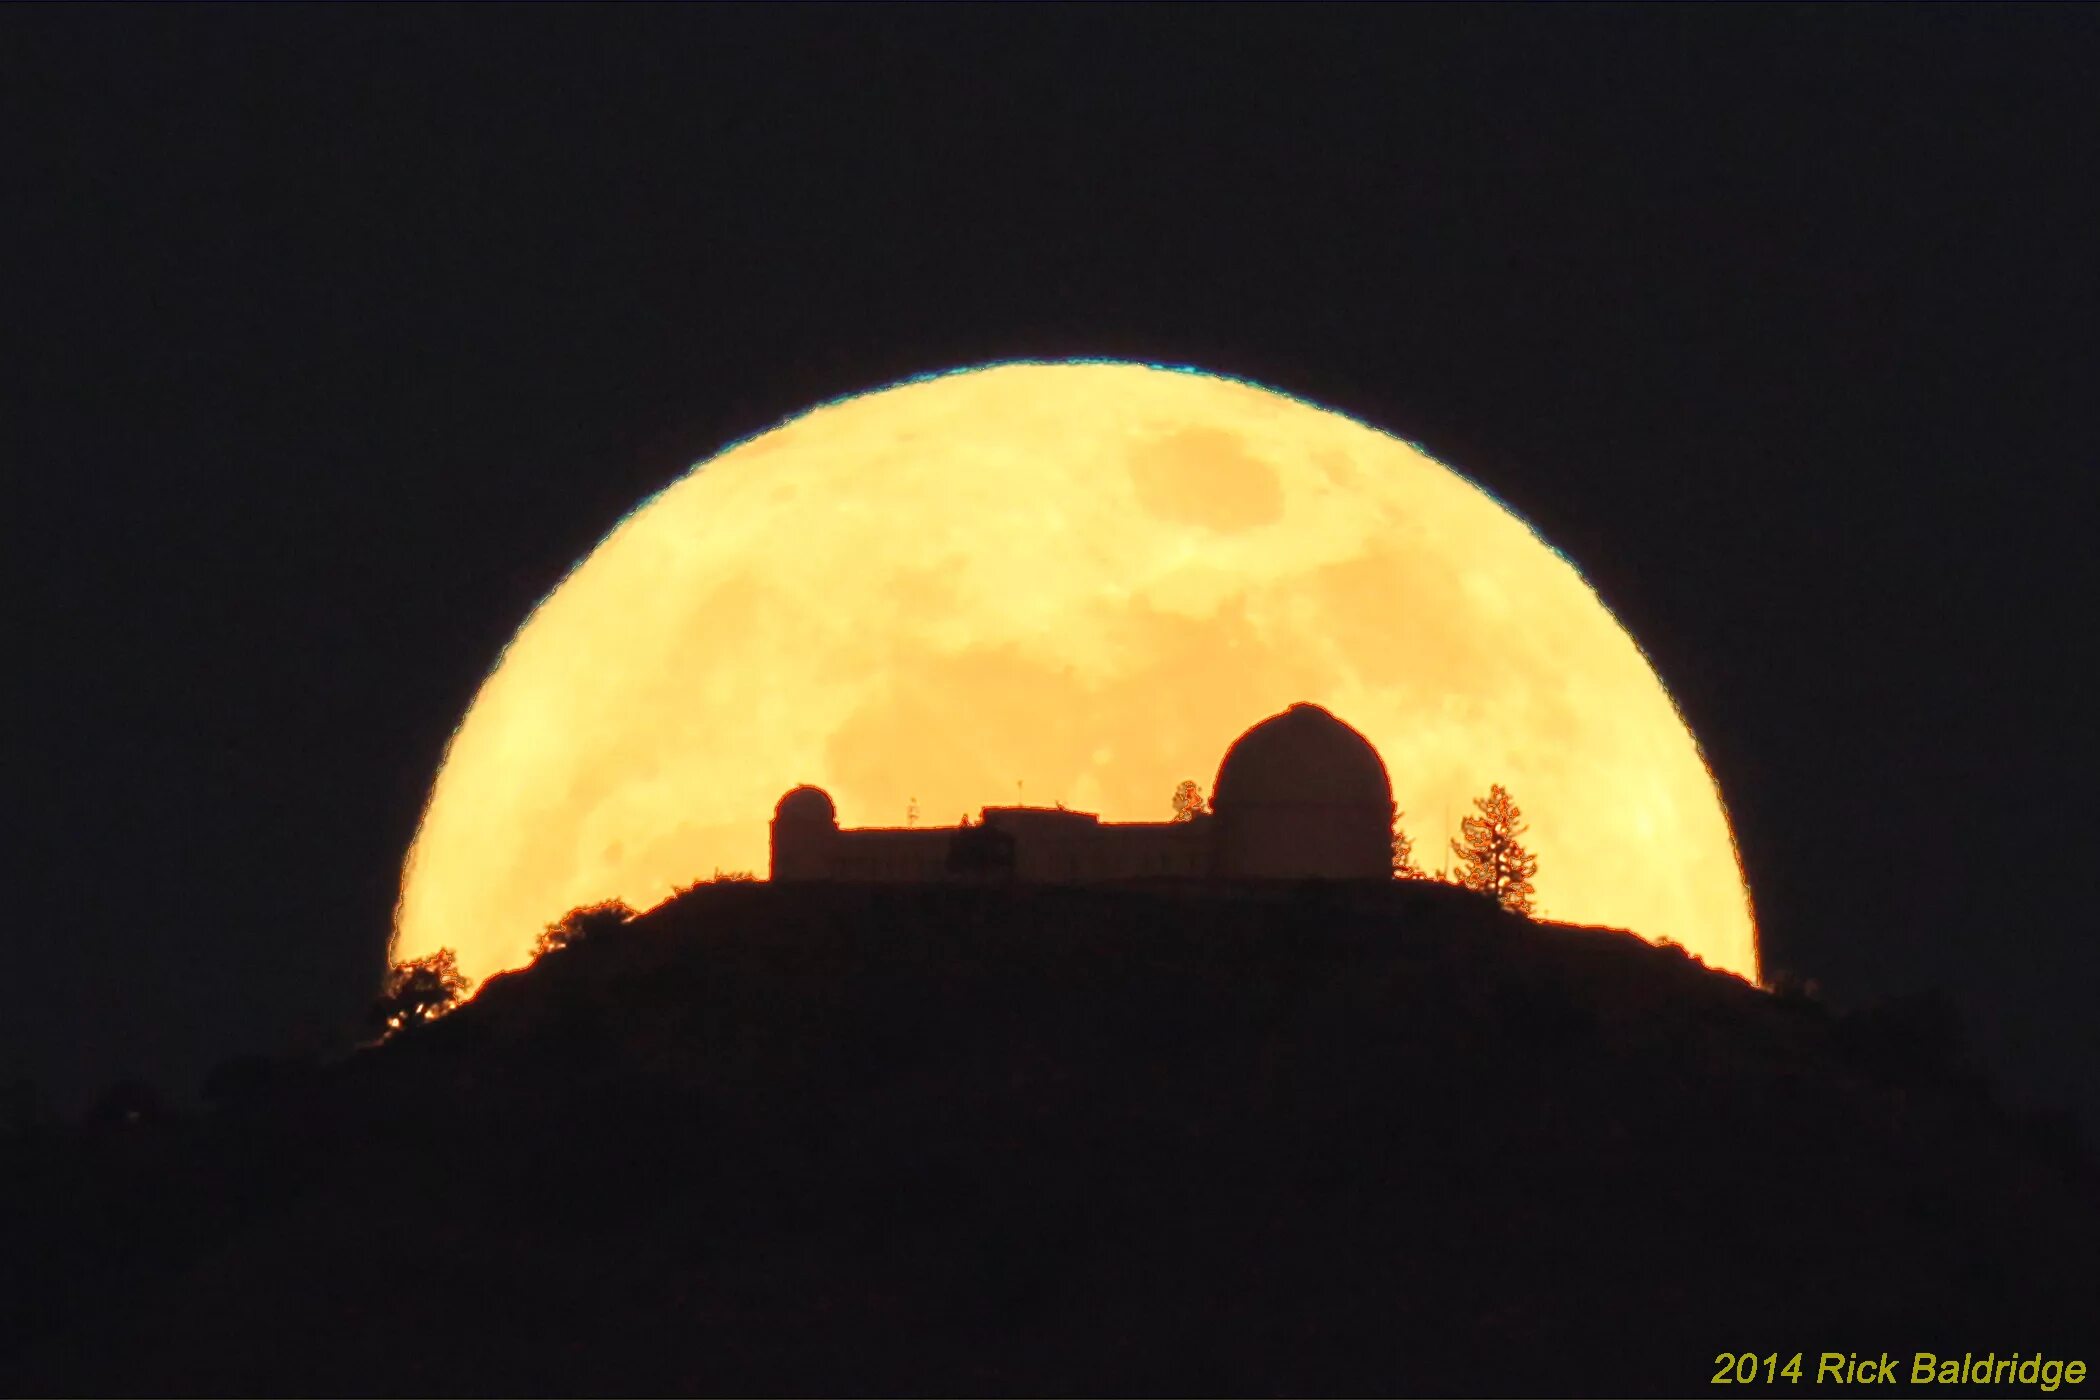 Обсерватория на Луне. Астрономические обсерватории на Луне. Купол Луна Васахи. Луна в апогее фото. Сжатие луны